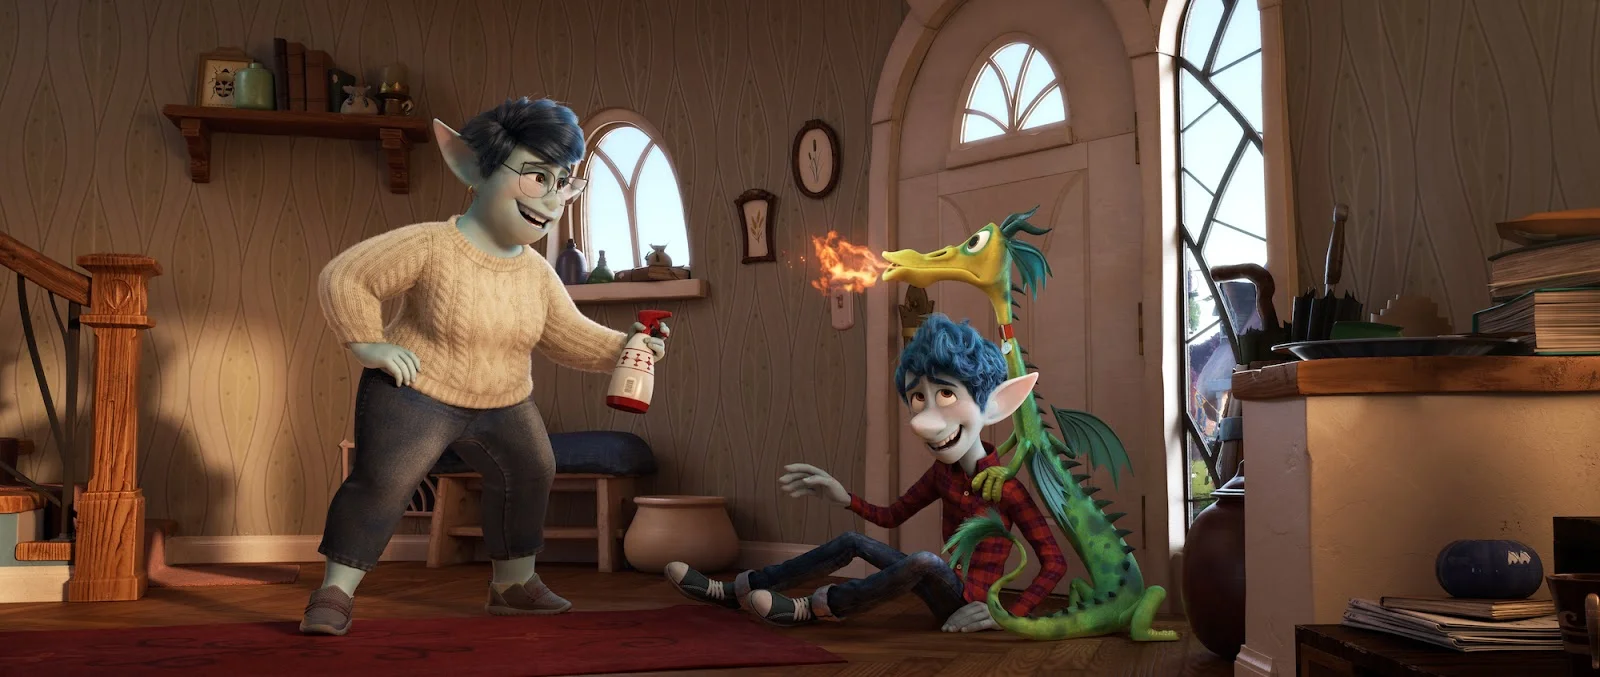 Рецензия на мультфильм «Вперед» от Disney и Pixar. Герои мерча и магии - фото 2